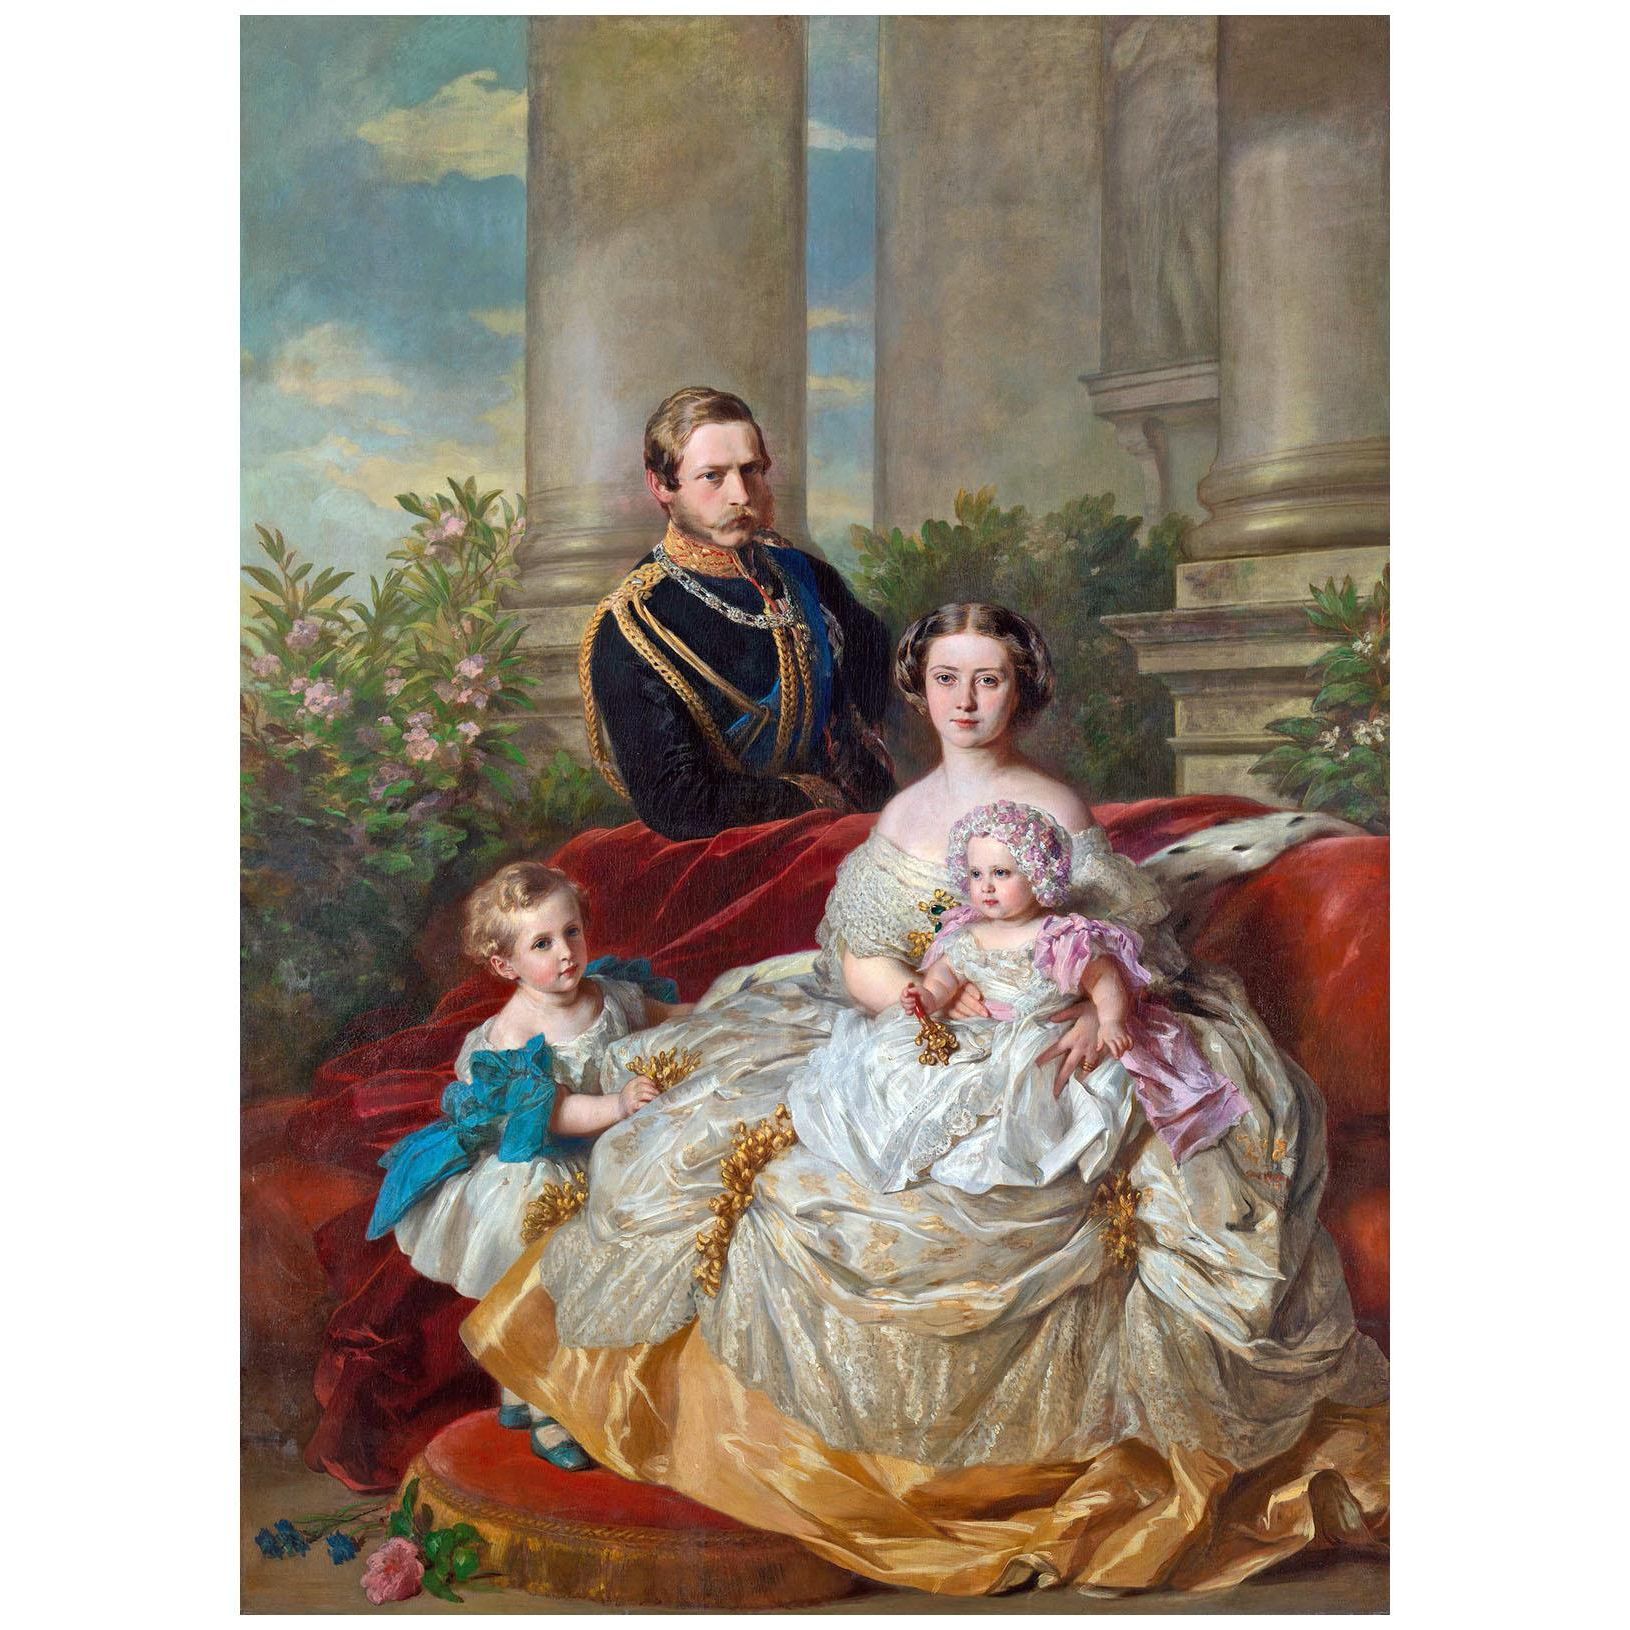 Franz Winterhalter. Kaiser Friedrich III mit Familie. 1862. Royal Collection London